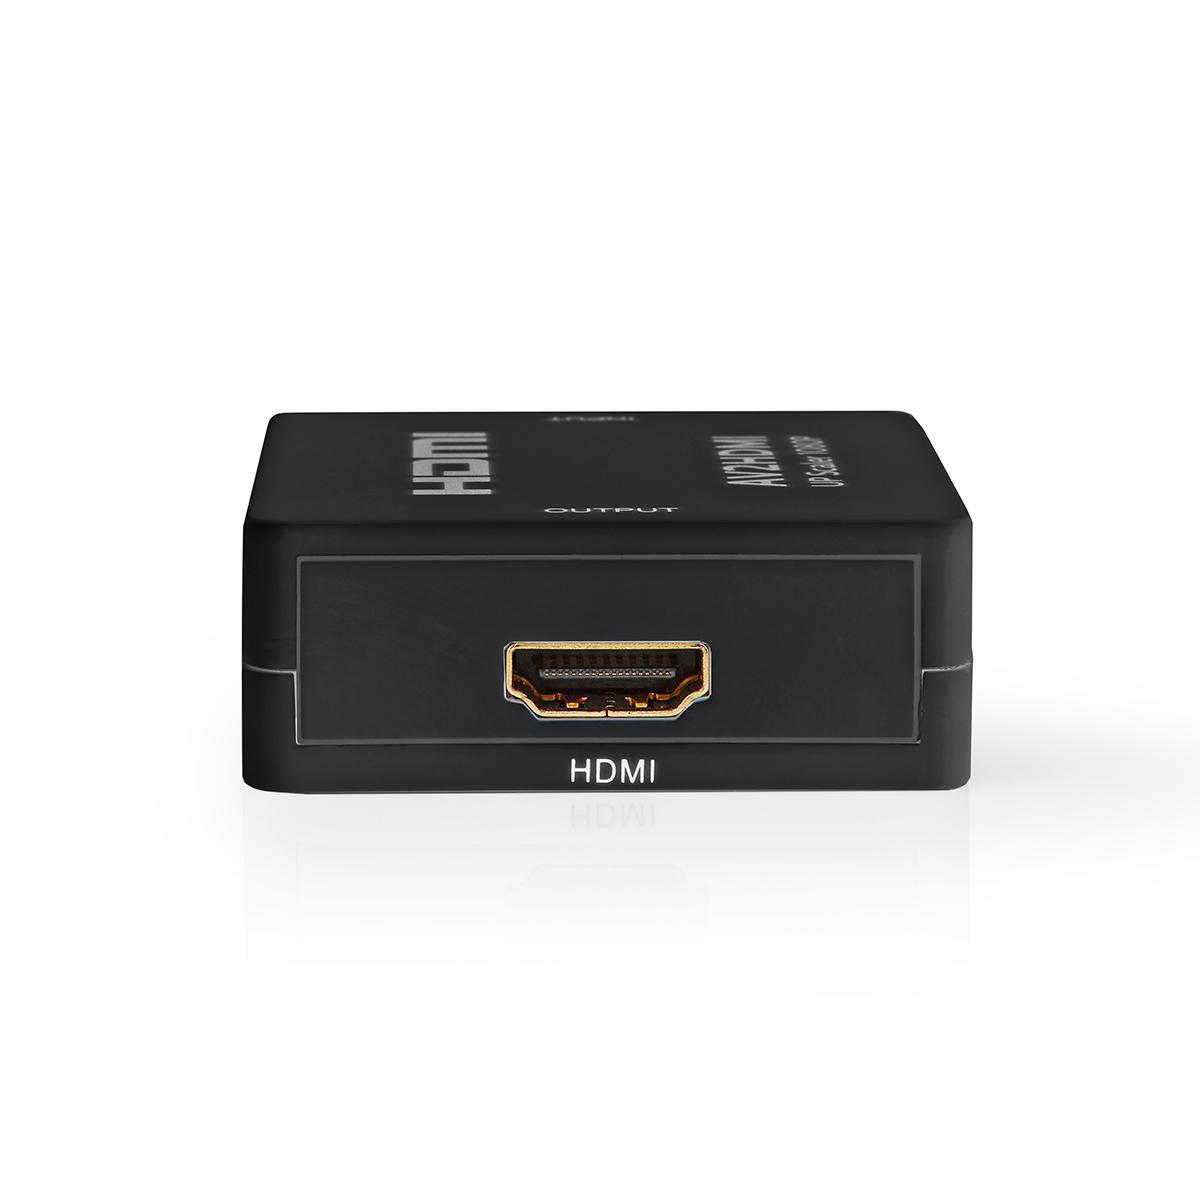 NEDIS VCON3456AT Converter HDMI